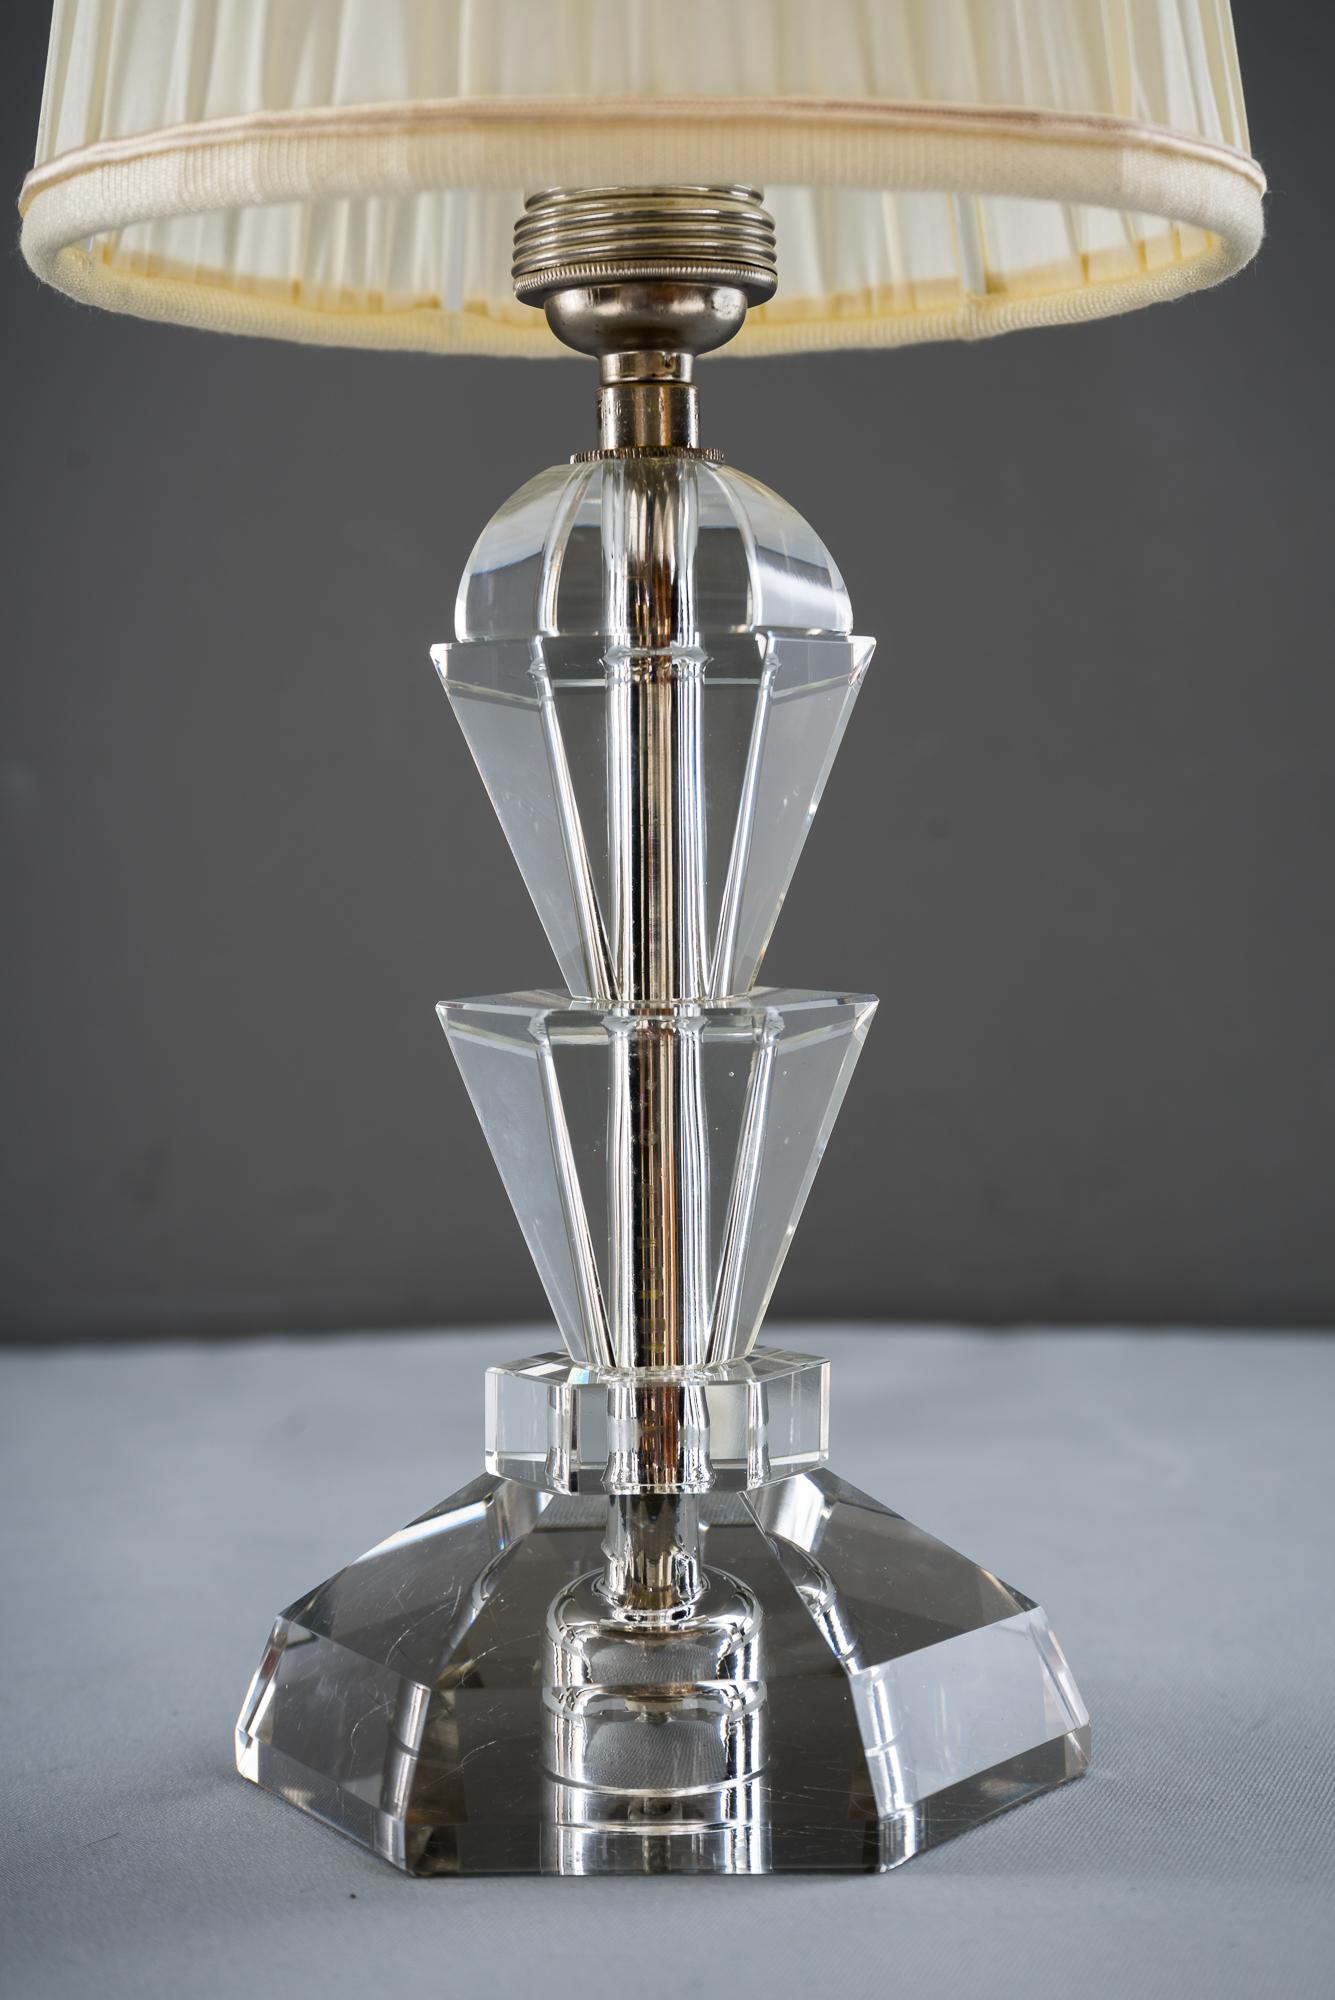 Lampe de table Bakalowits, circa 1950s
Verre, nickelé et tissu
État d'origine
L'abat-jour en tissu est remplacé (neuf).